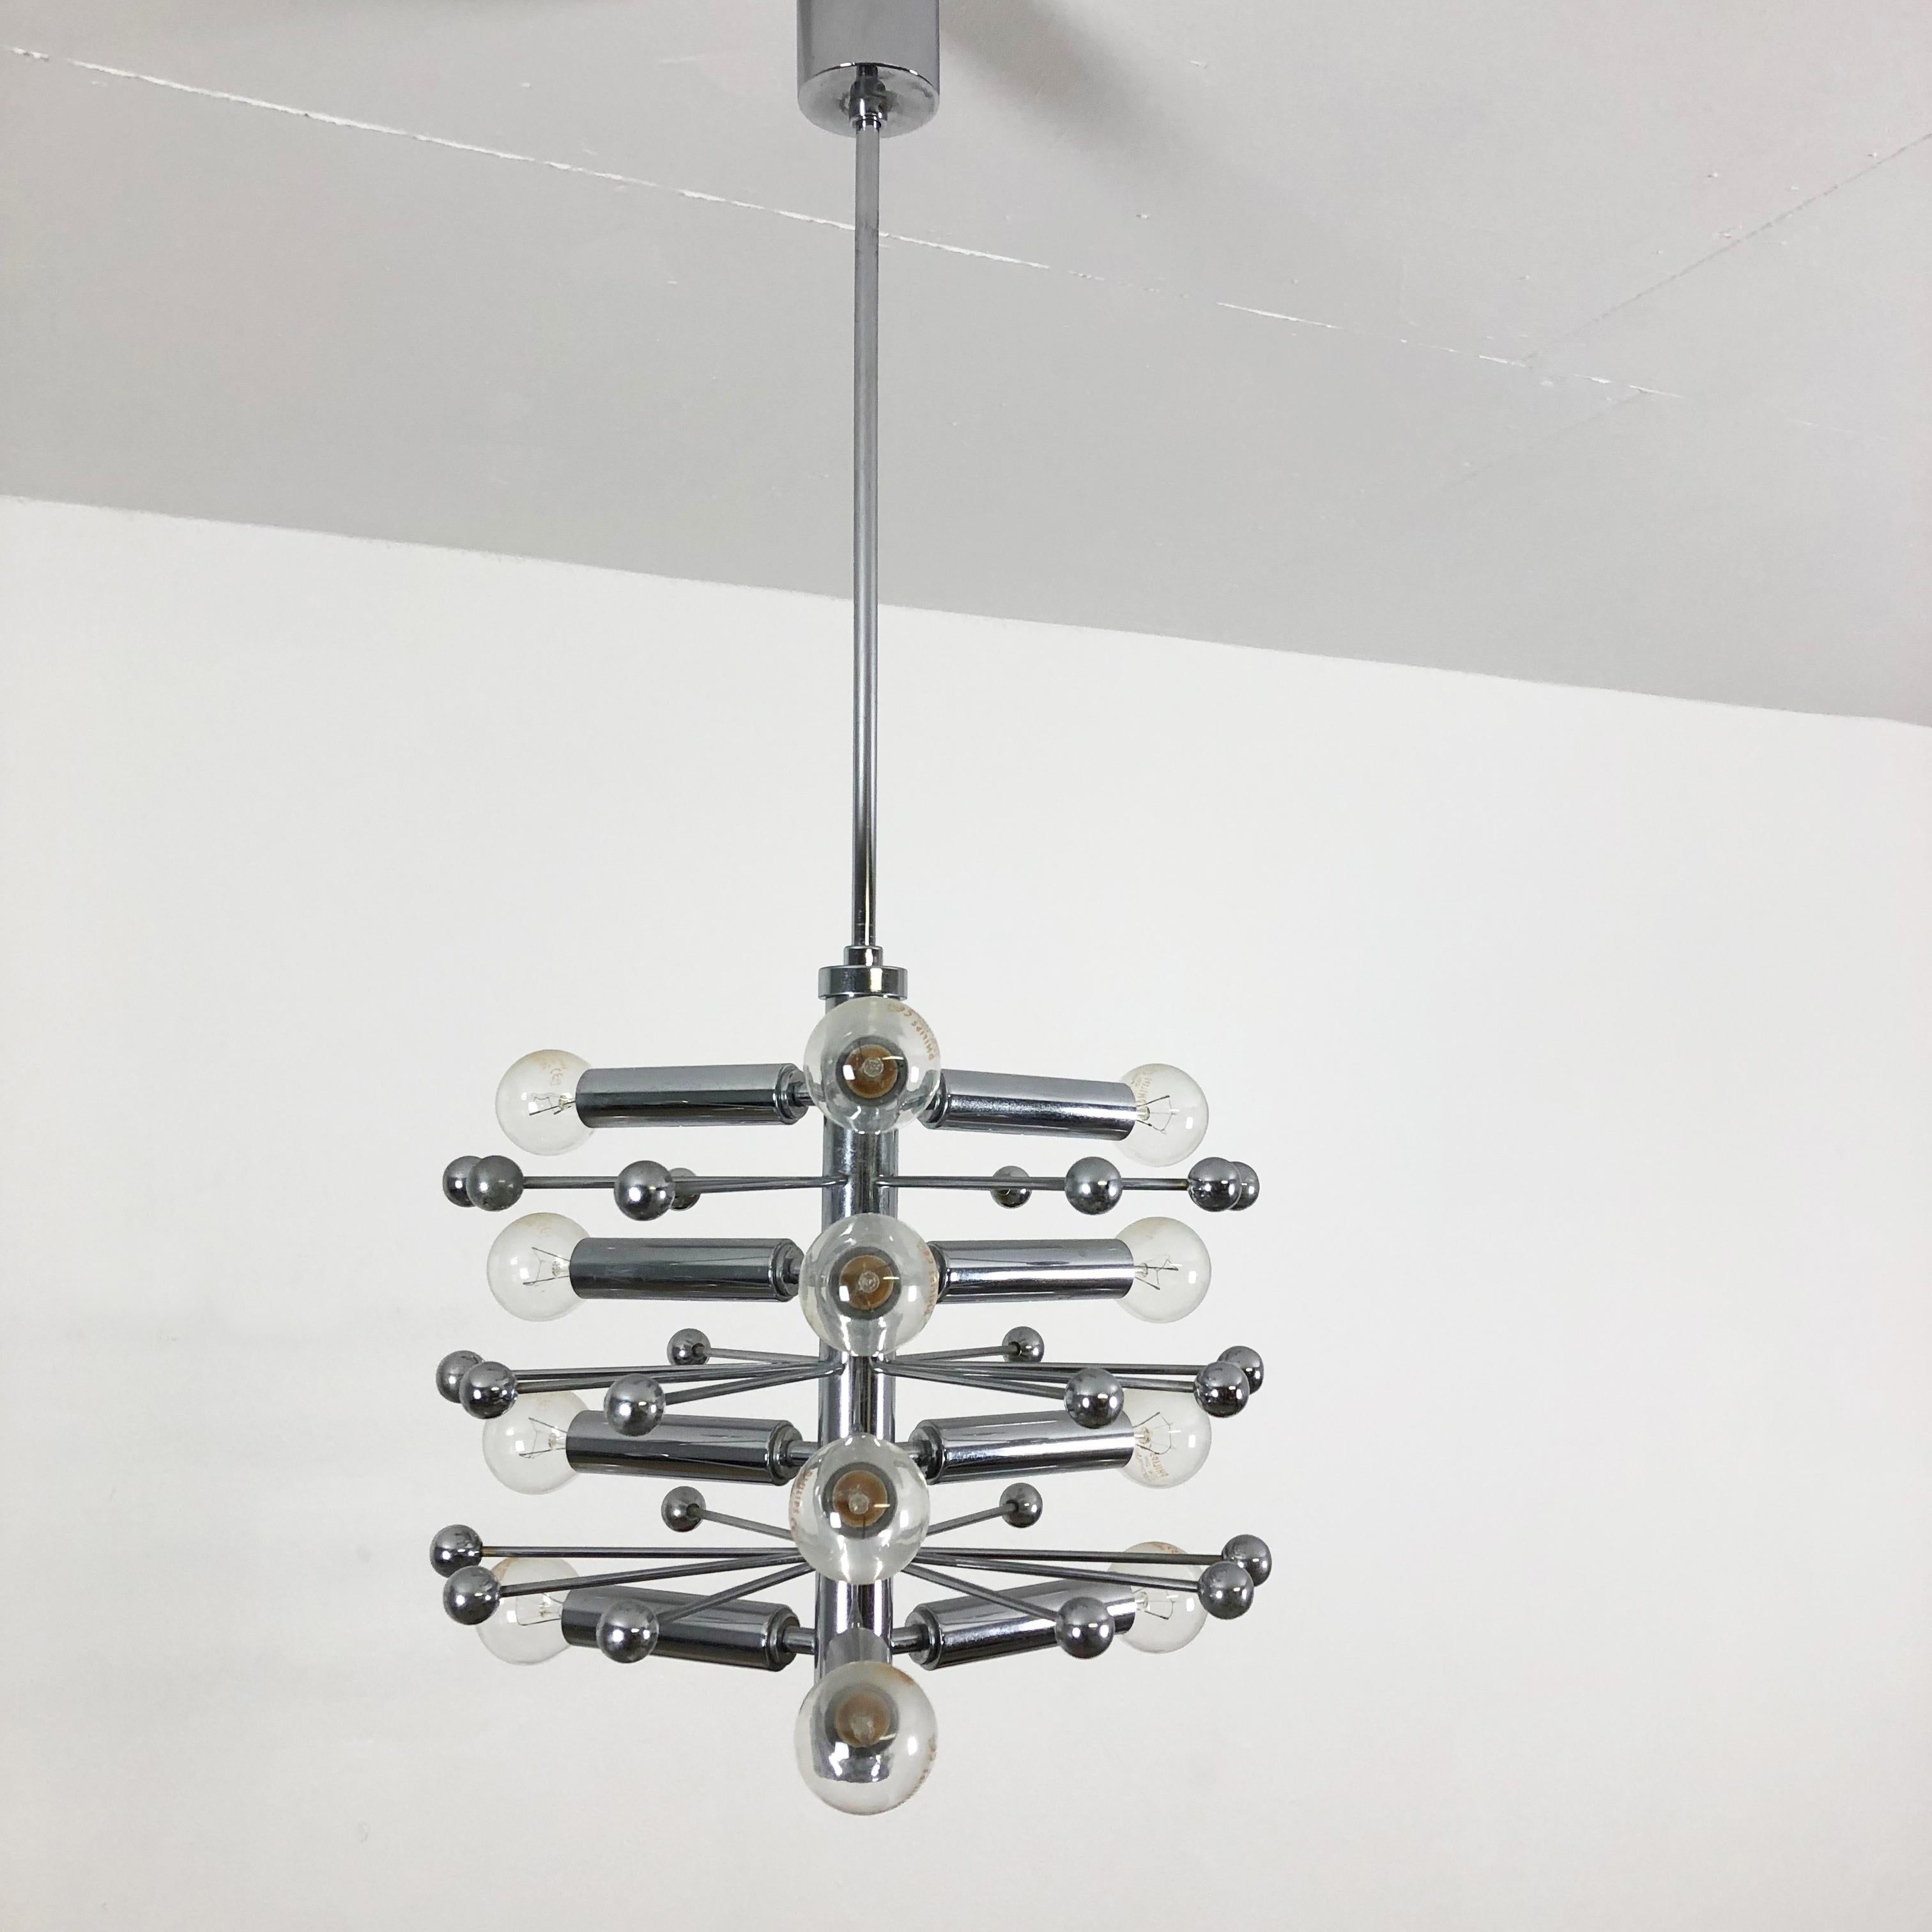 Modernist Chrome Sputnik Hanging Light, Cosack Lights, 1970s, Germany For Sale 8